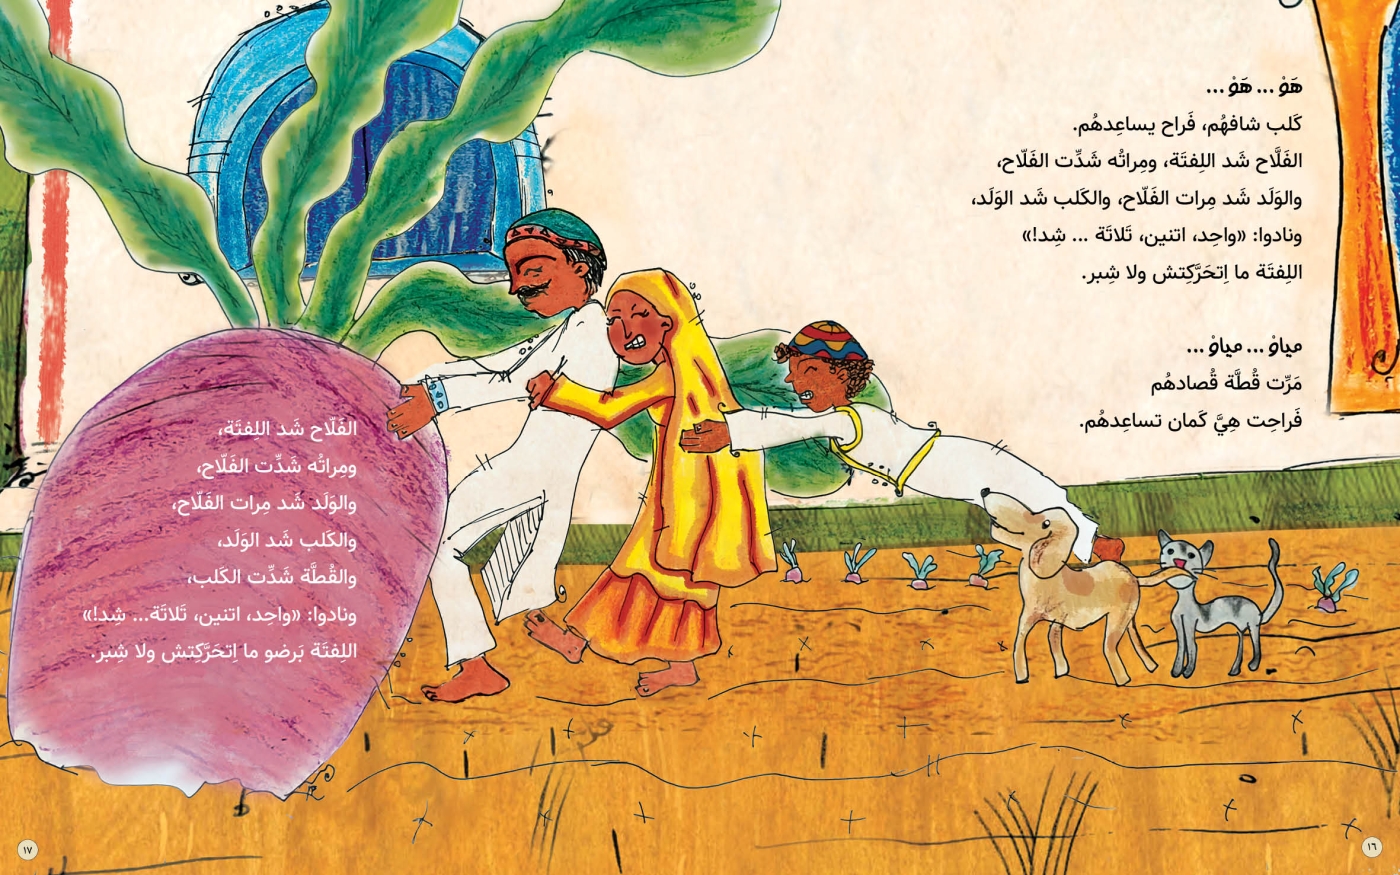 Le Gros Navet, issu de l’anthologie Kan Ya Ma Kan de Riham Shendy (illustration de Dina Abd el-Salam)